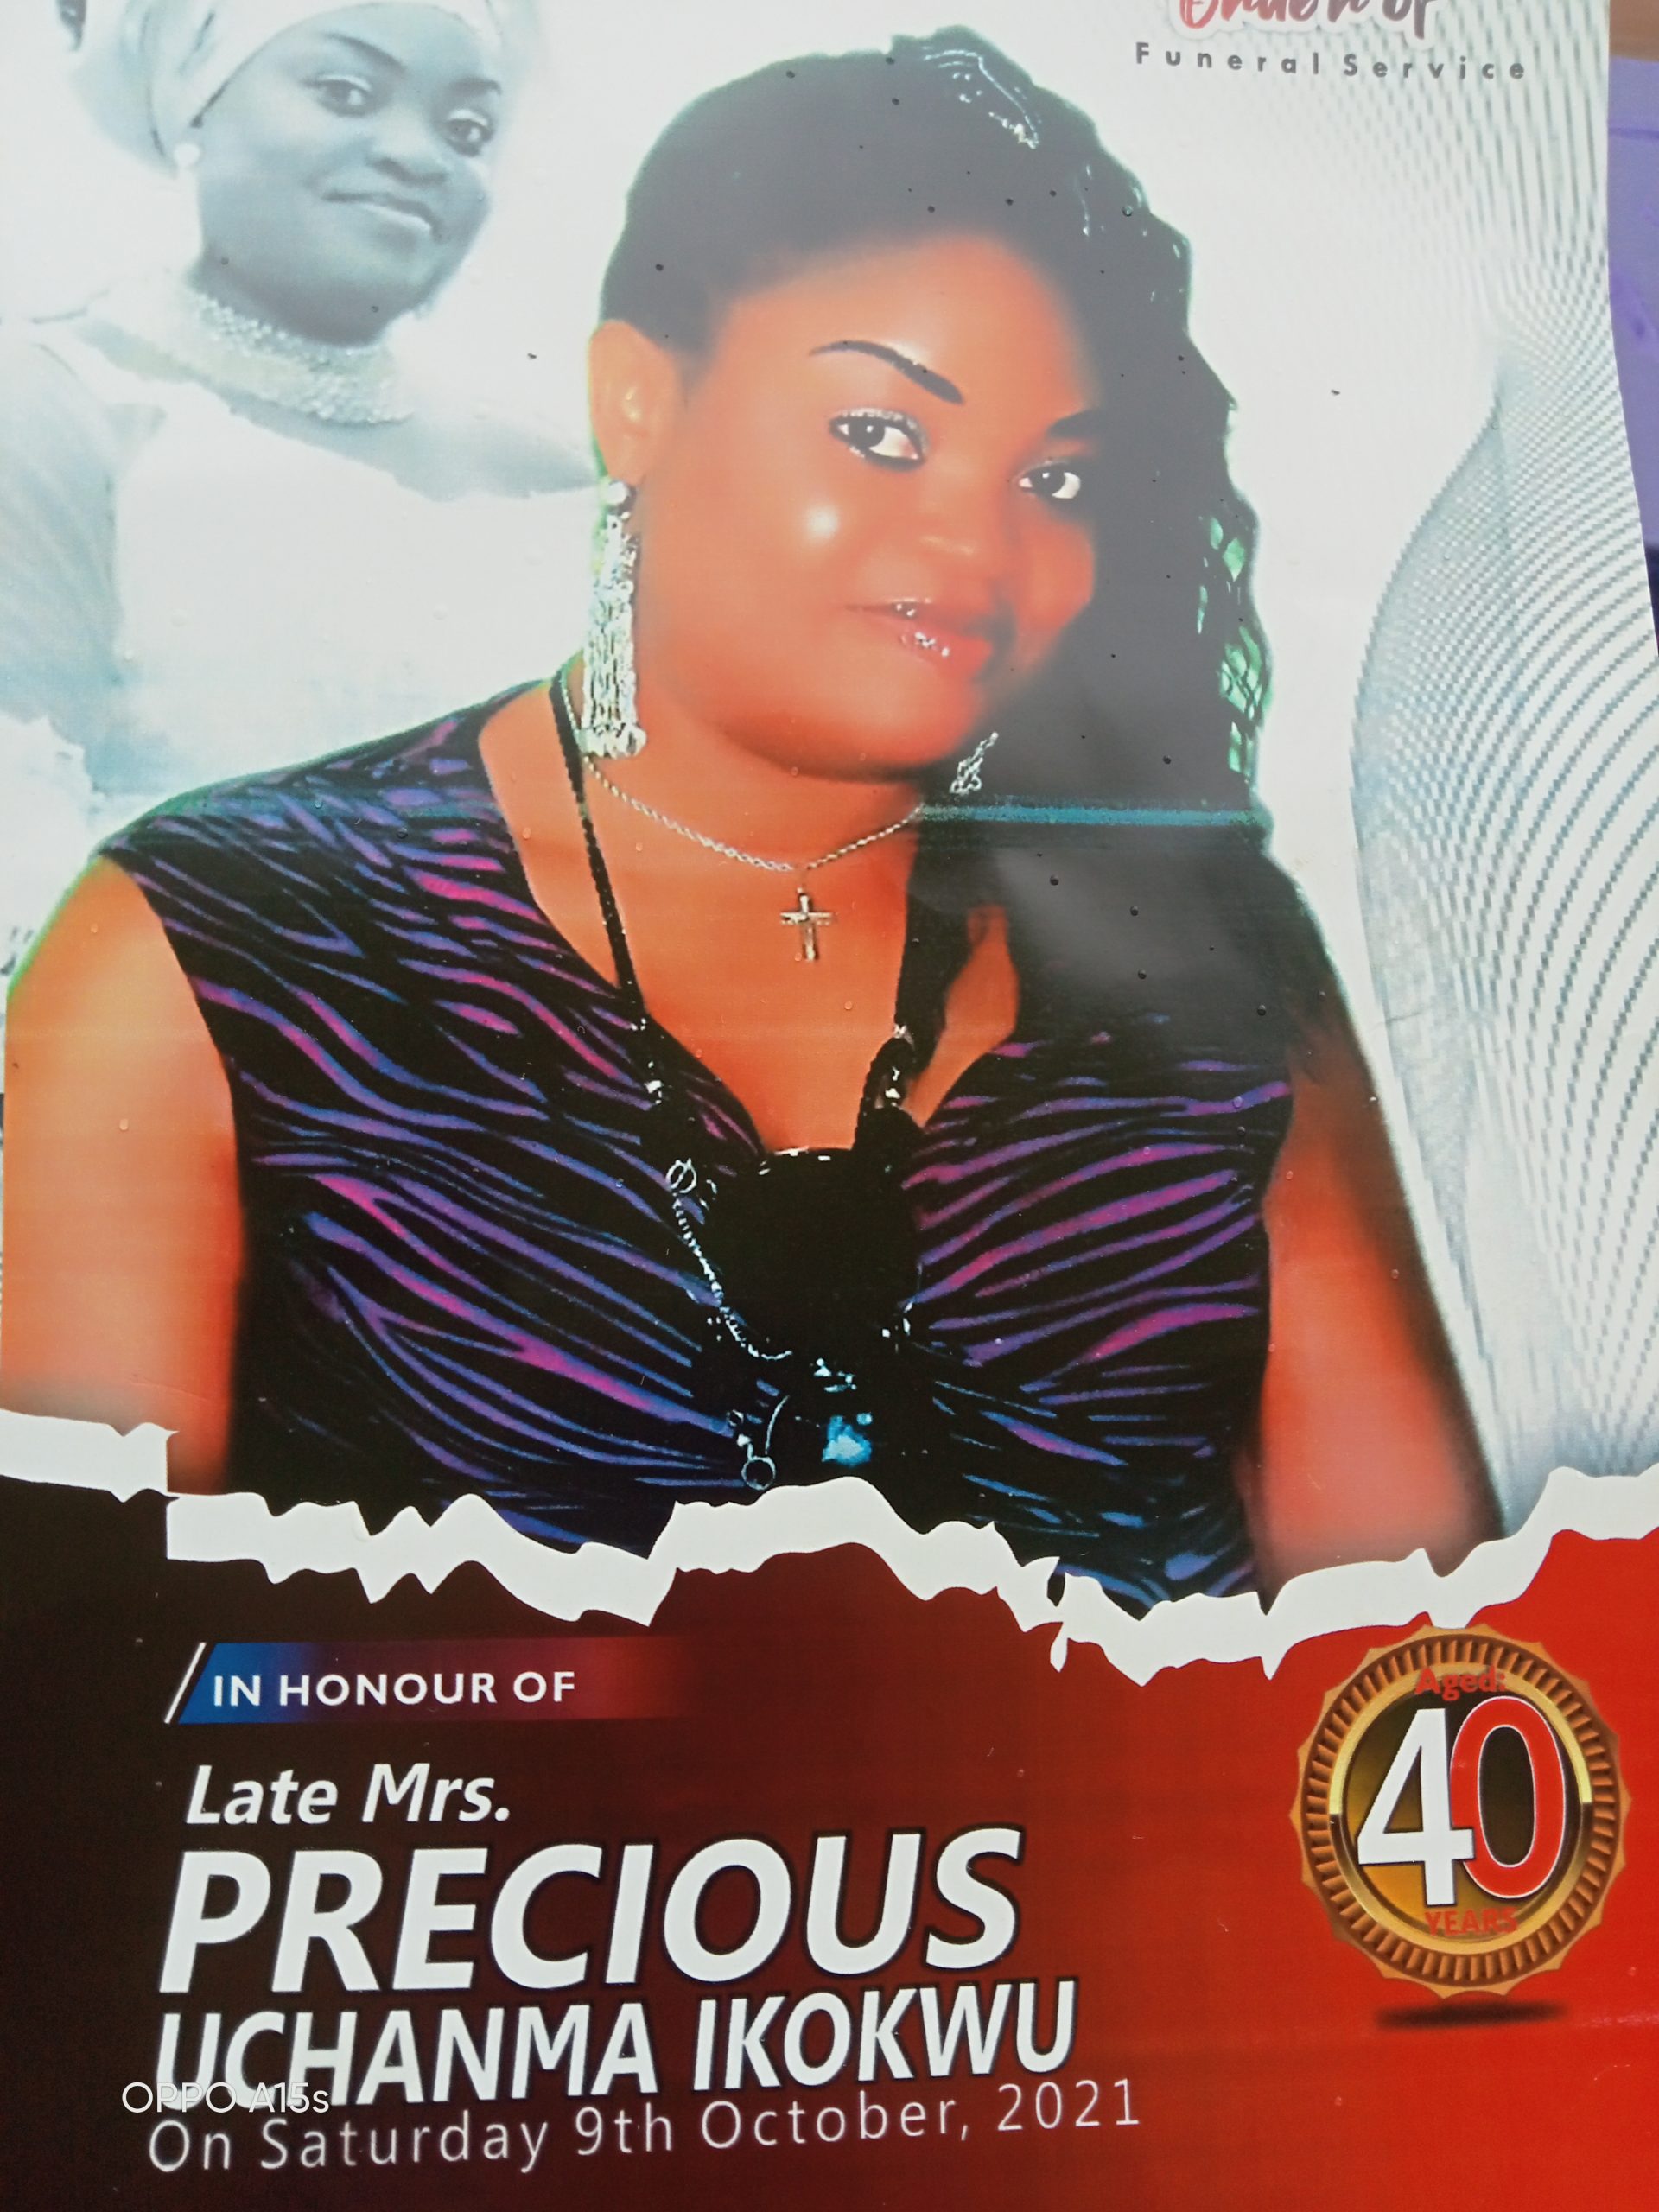 Late Mrs. Precious Uchama Ikokwu.